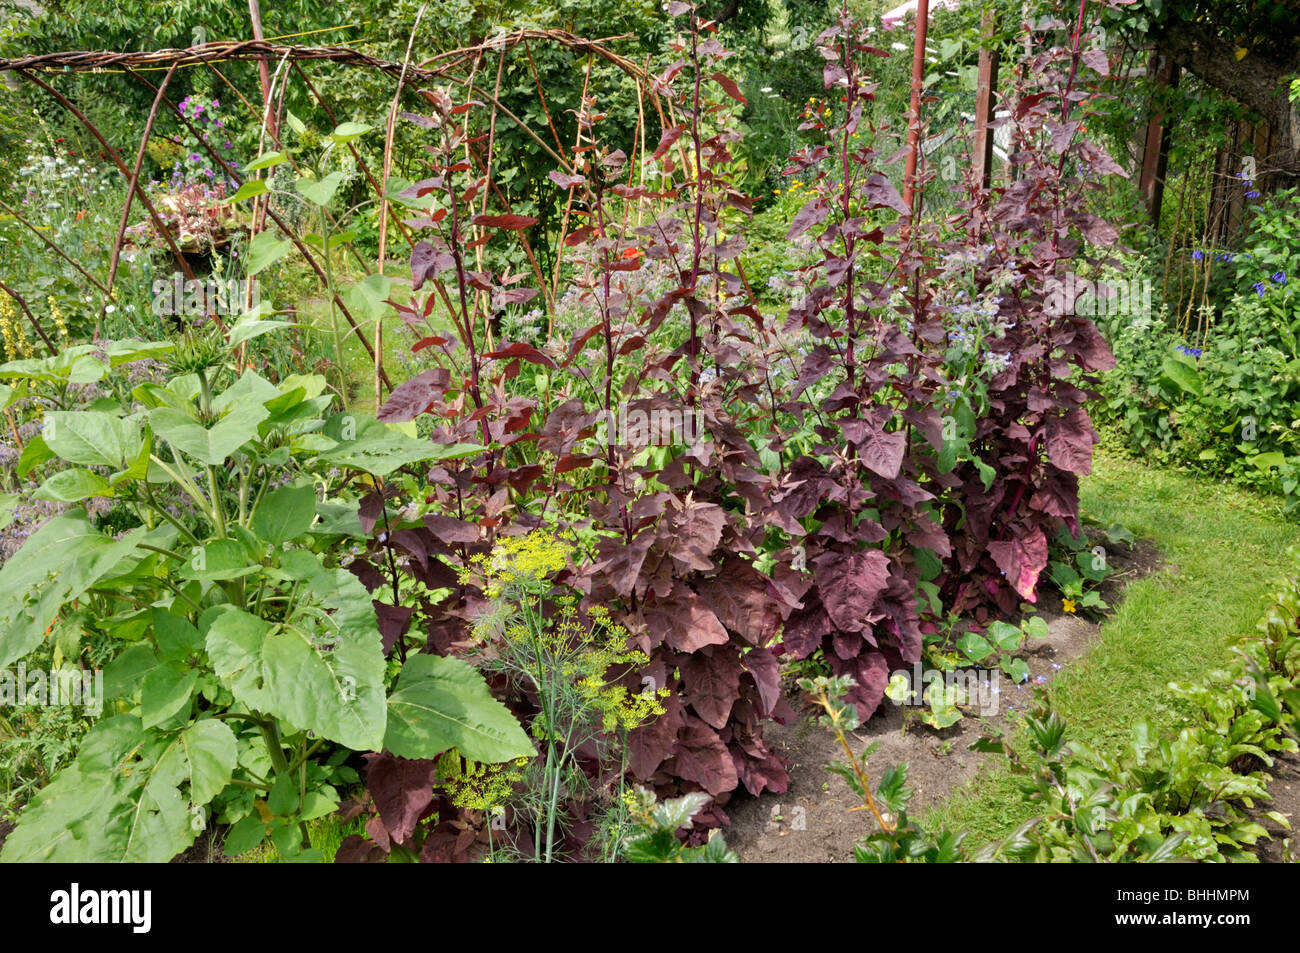 Red garden orache (Atriplex hortensis var. rubra) in a vegetable garden. Design: Susanna Komischke Stock Photo